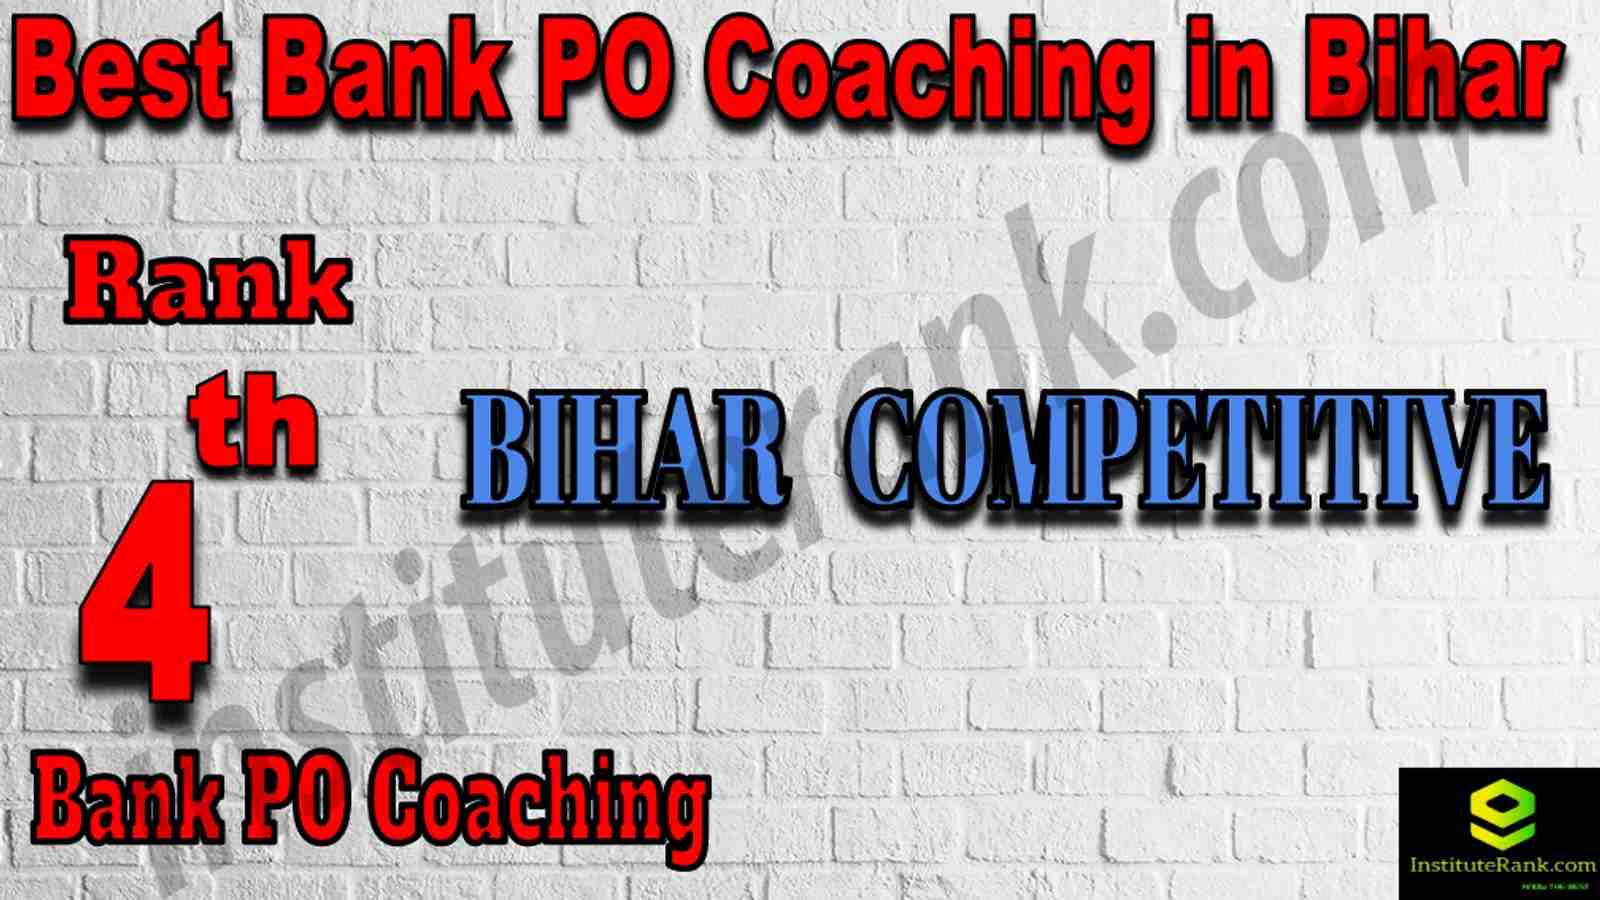 4th Best Bank PO Coaching in Bihar